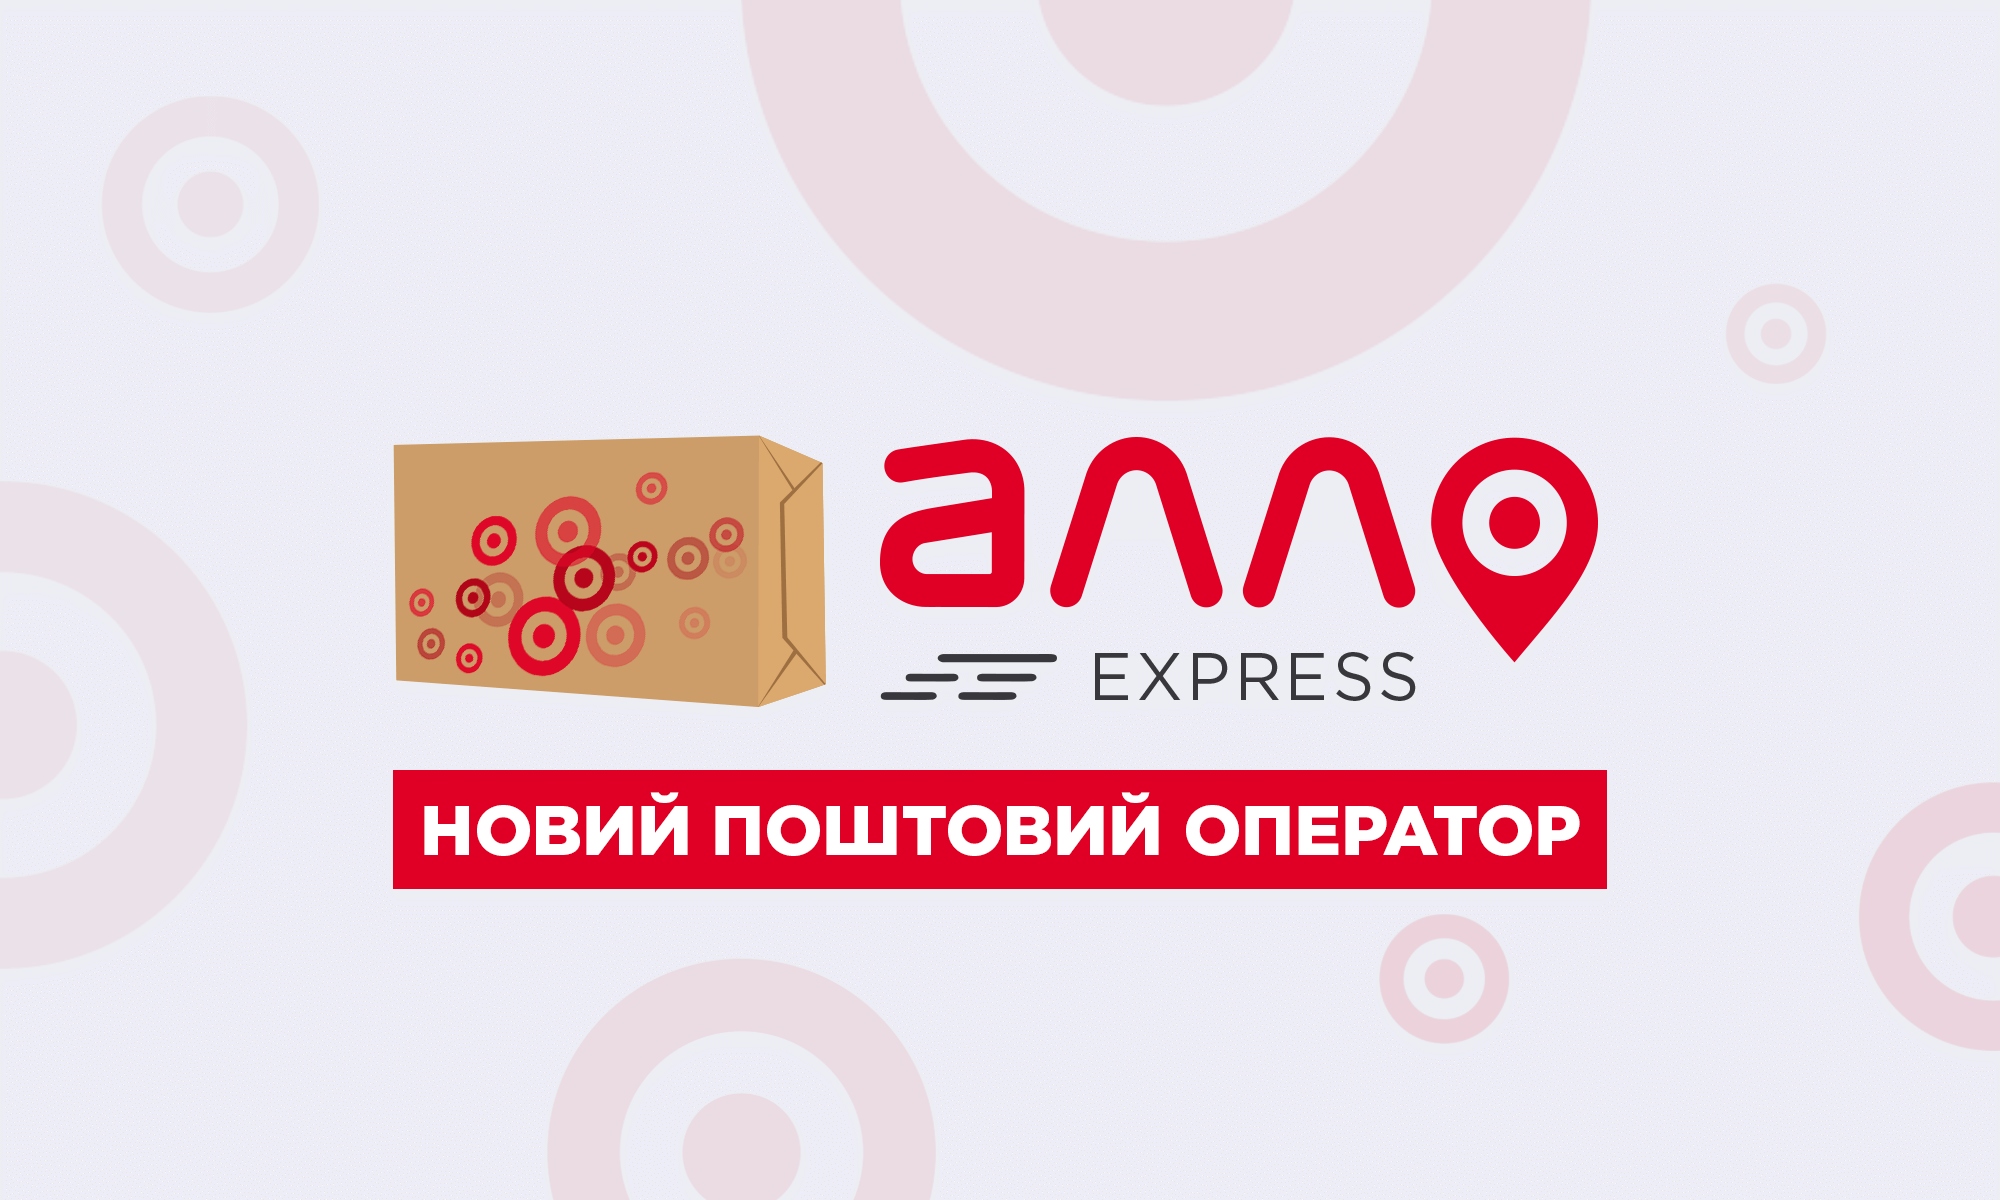 АЛЛО Express — новий поштовий оператор України